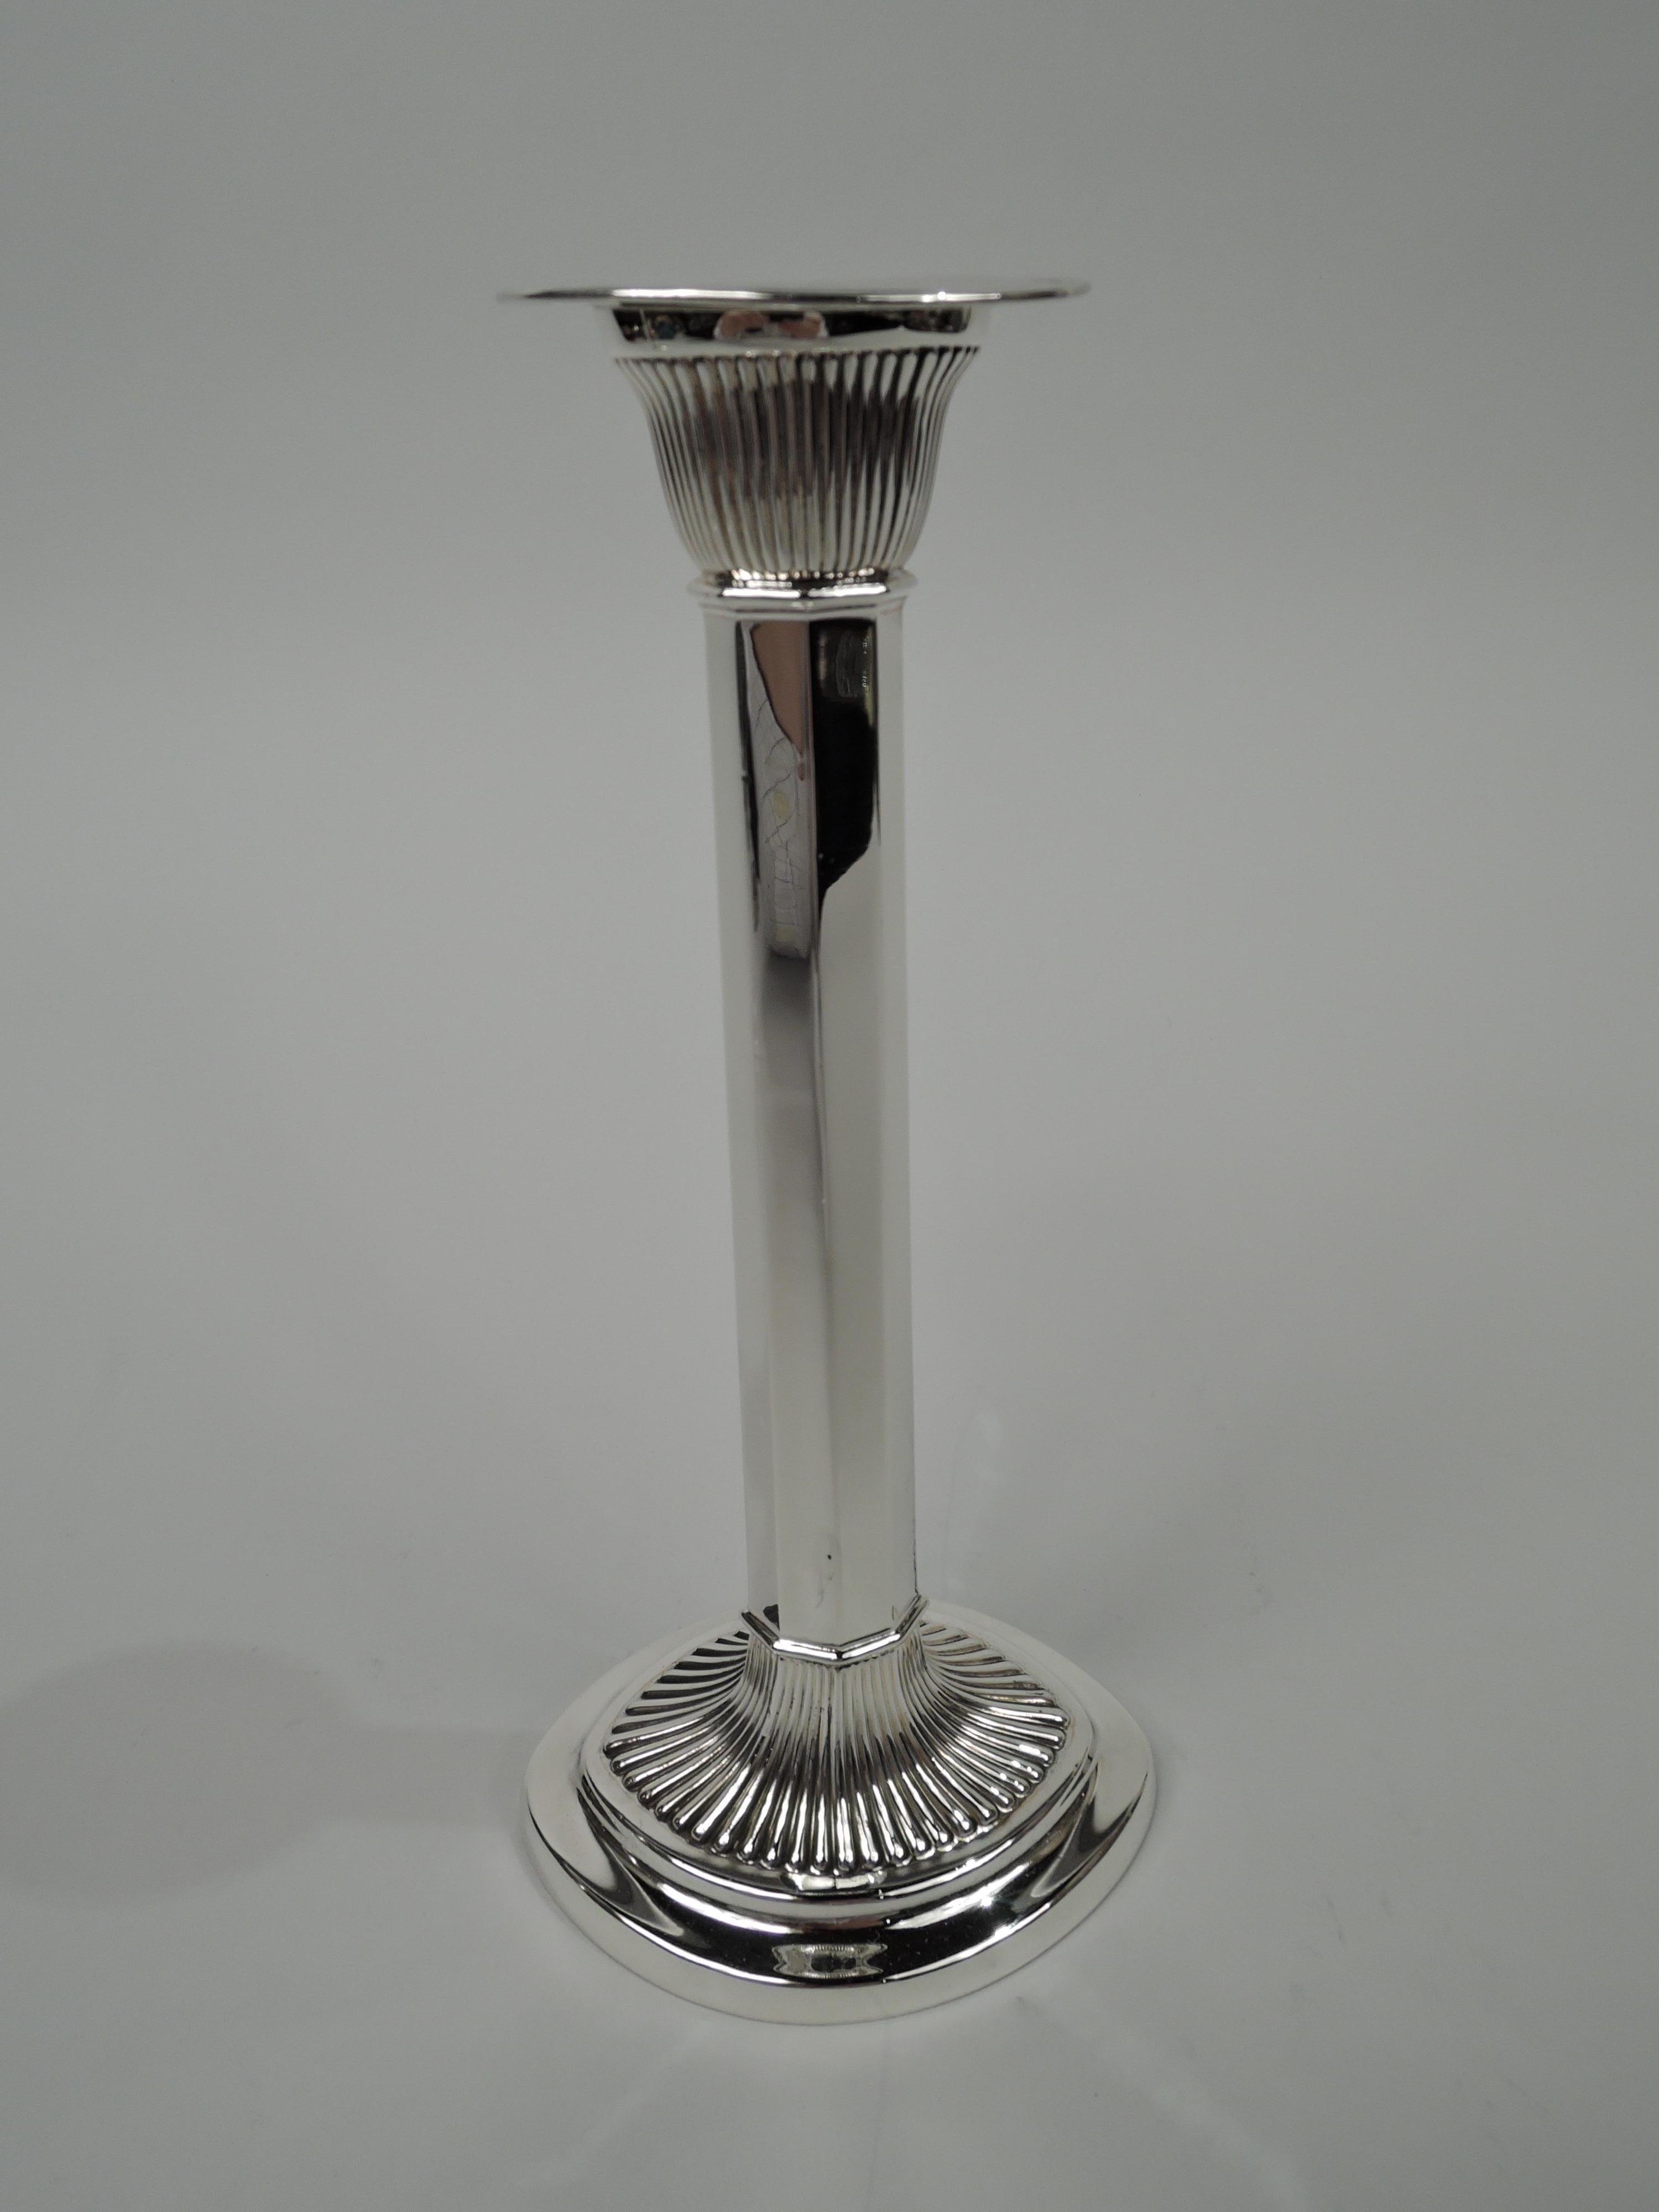 Paar Edwardian Modern Sterling Silber Kerzenleuchter. Hergestellt von Gorham in Providence im Jahr 1905. Eiförmig mit facettiertem, sich nach oben verjüngendem Griff auf erhöhtem Fuß. Verjüngter Sockel mit abnehmbarer Bobeche. Dramatische Rippung an